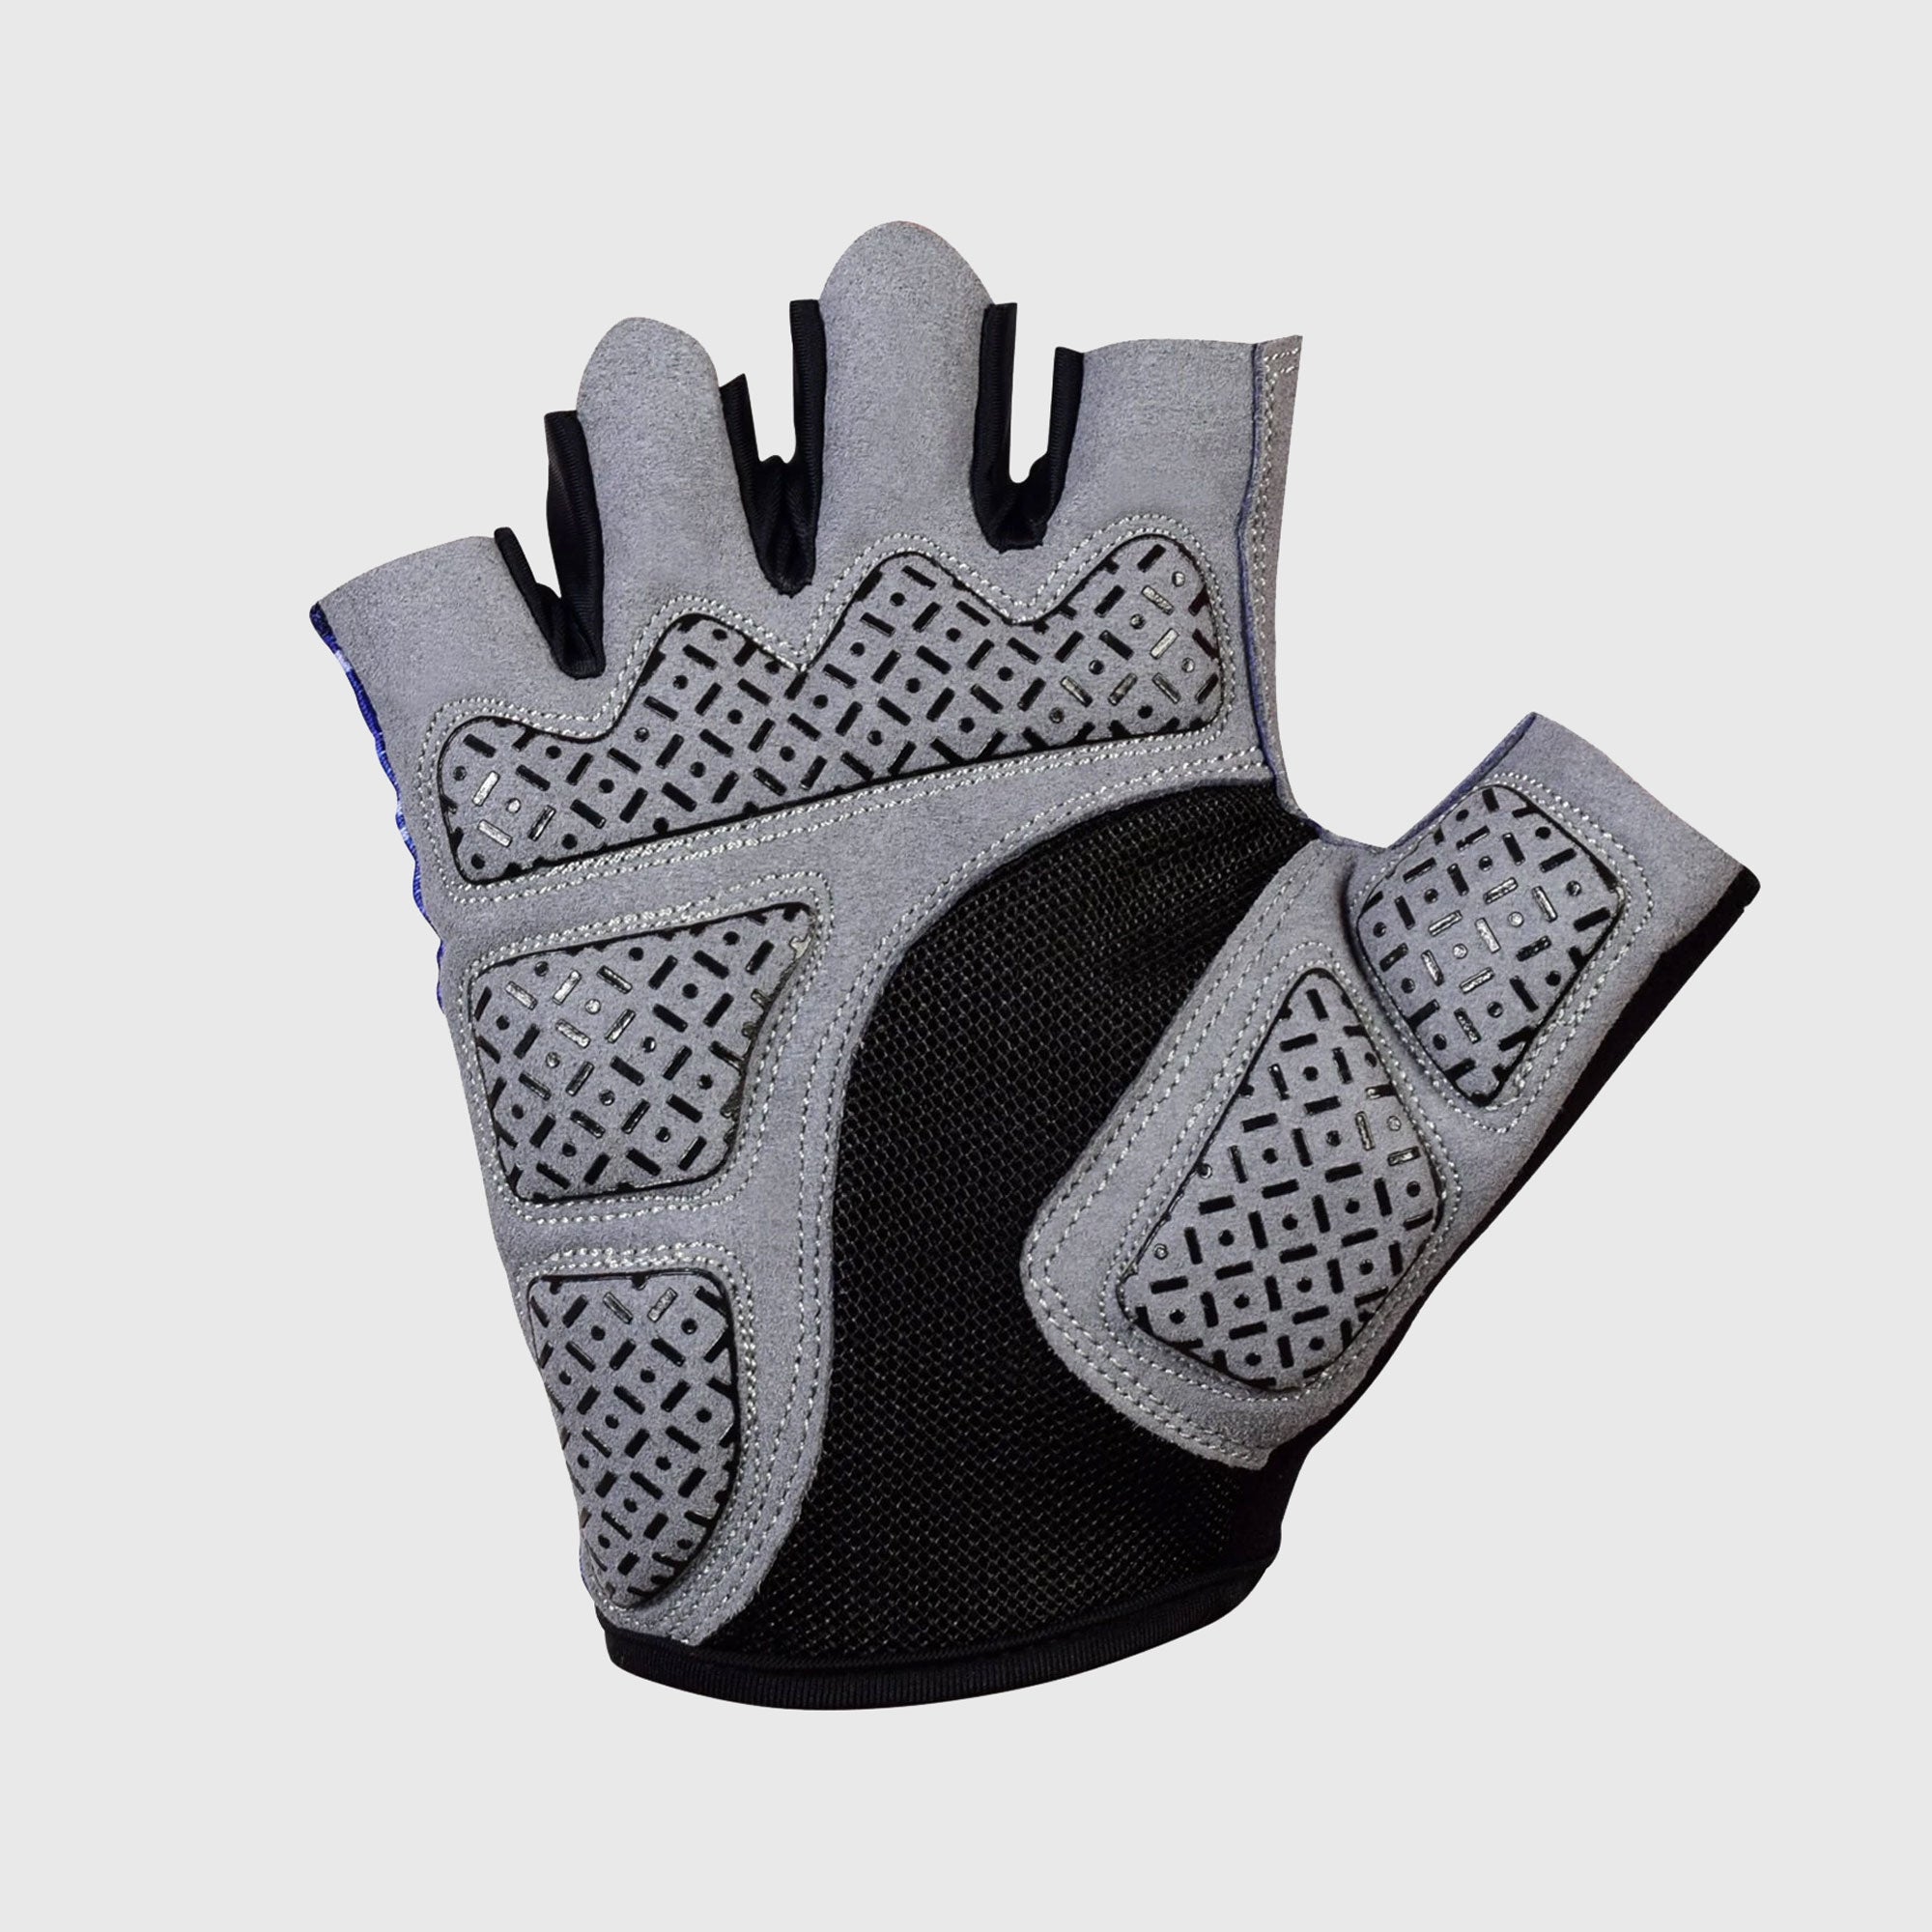 Fdx Red Short Finger Cycling Gloves for Summer MTB Road Bike fingerless, anti slip & Breathable - All Day